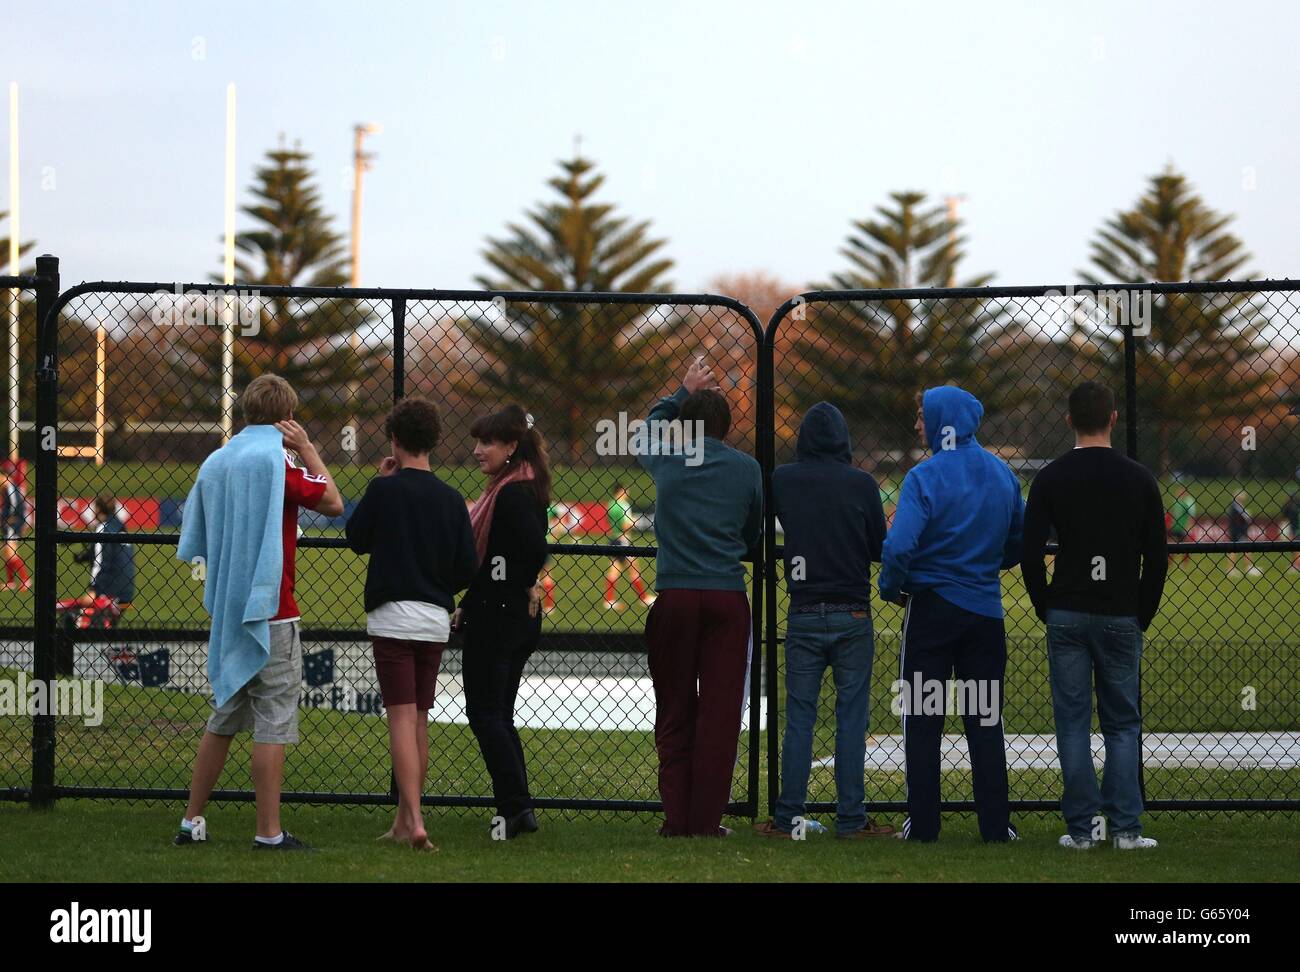 Les habitants de la région regardent la séance d'entraînement des Lions au stade no 2 Sports Ground, à Newcastle, en Australie. Banque D'Images